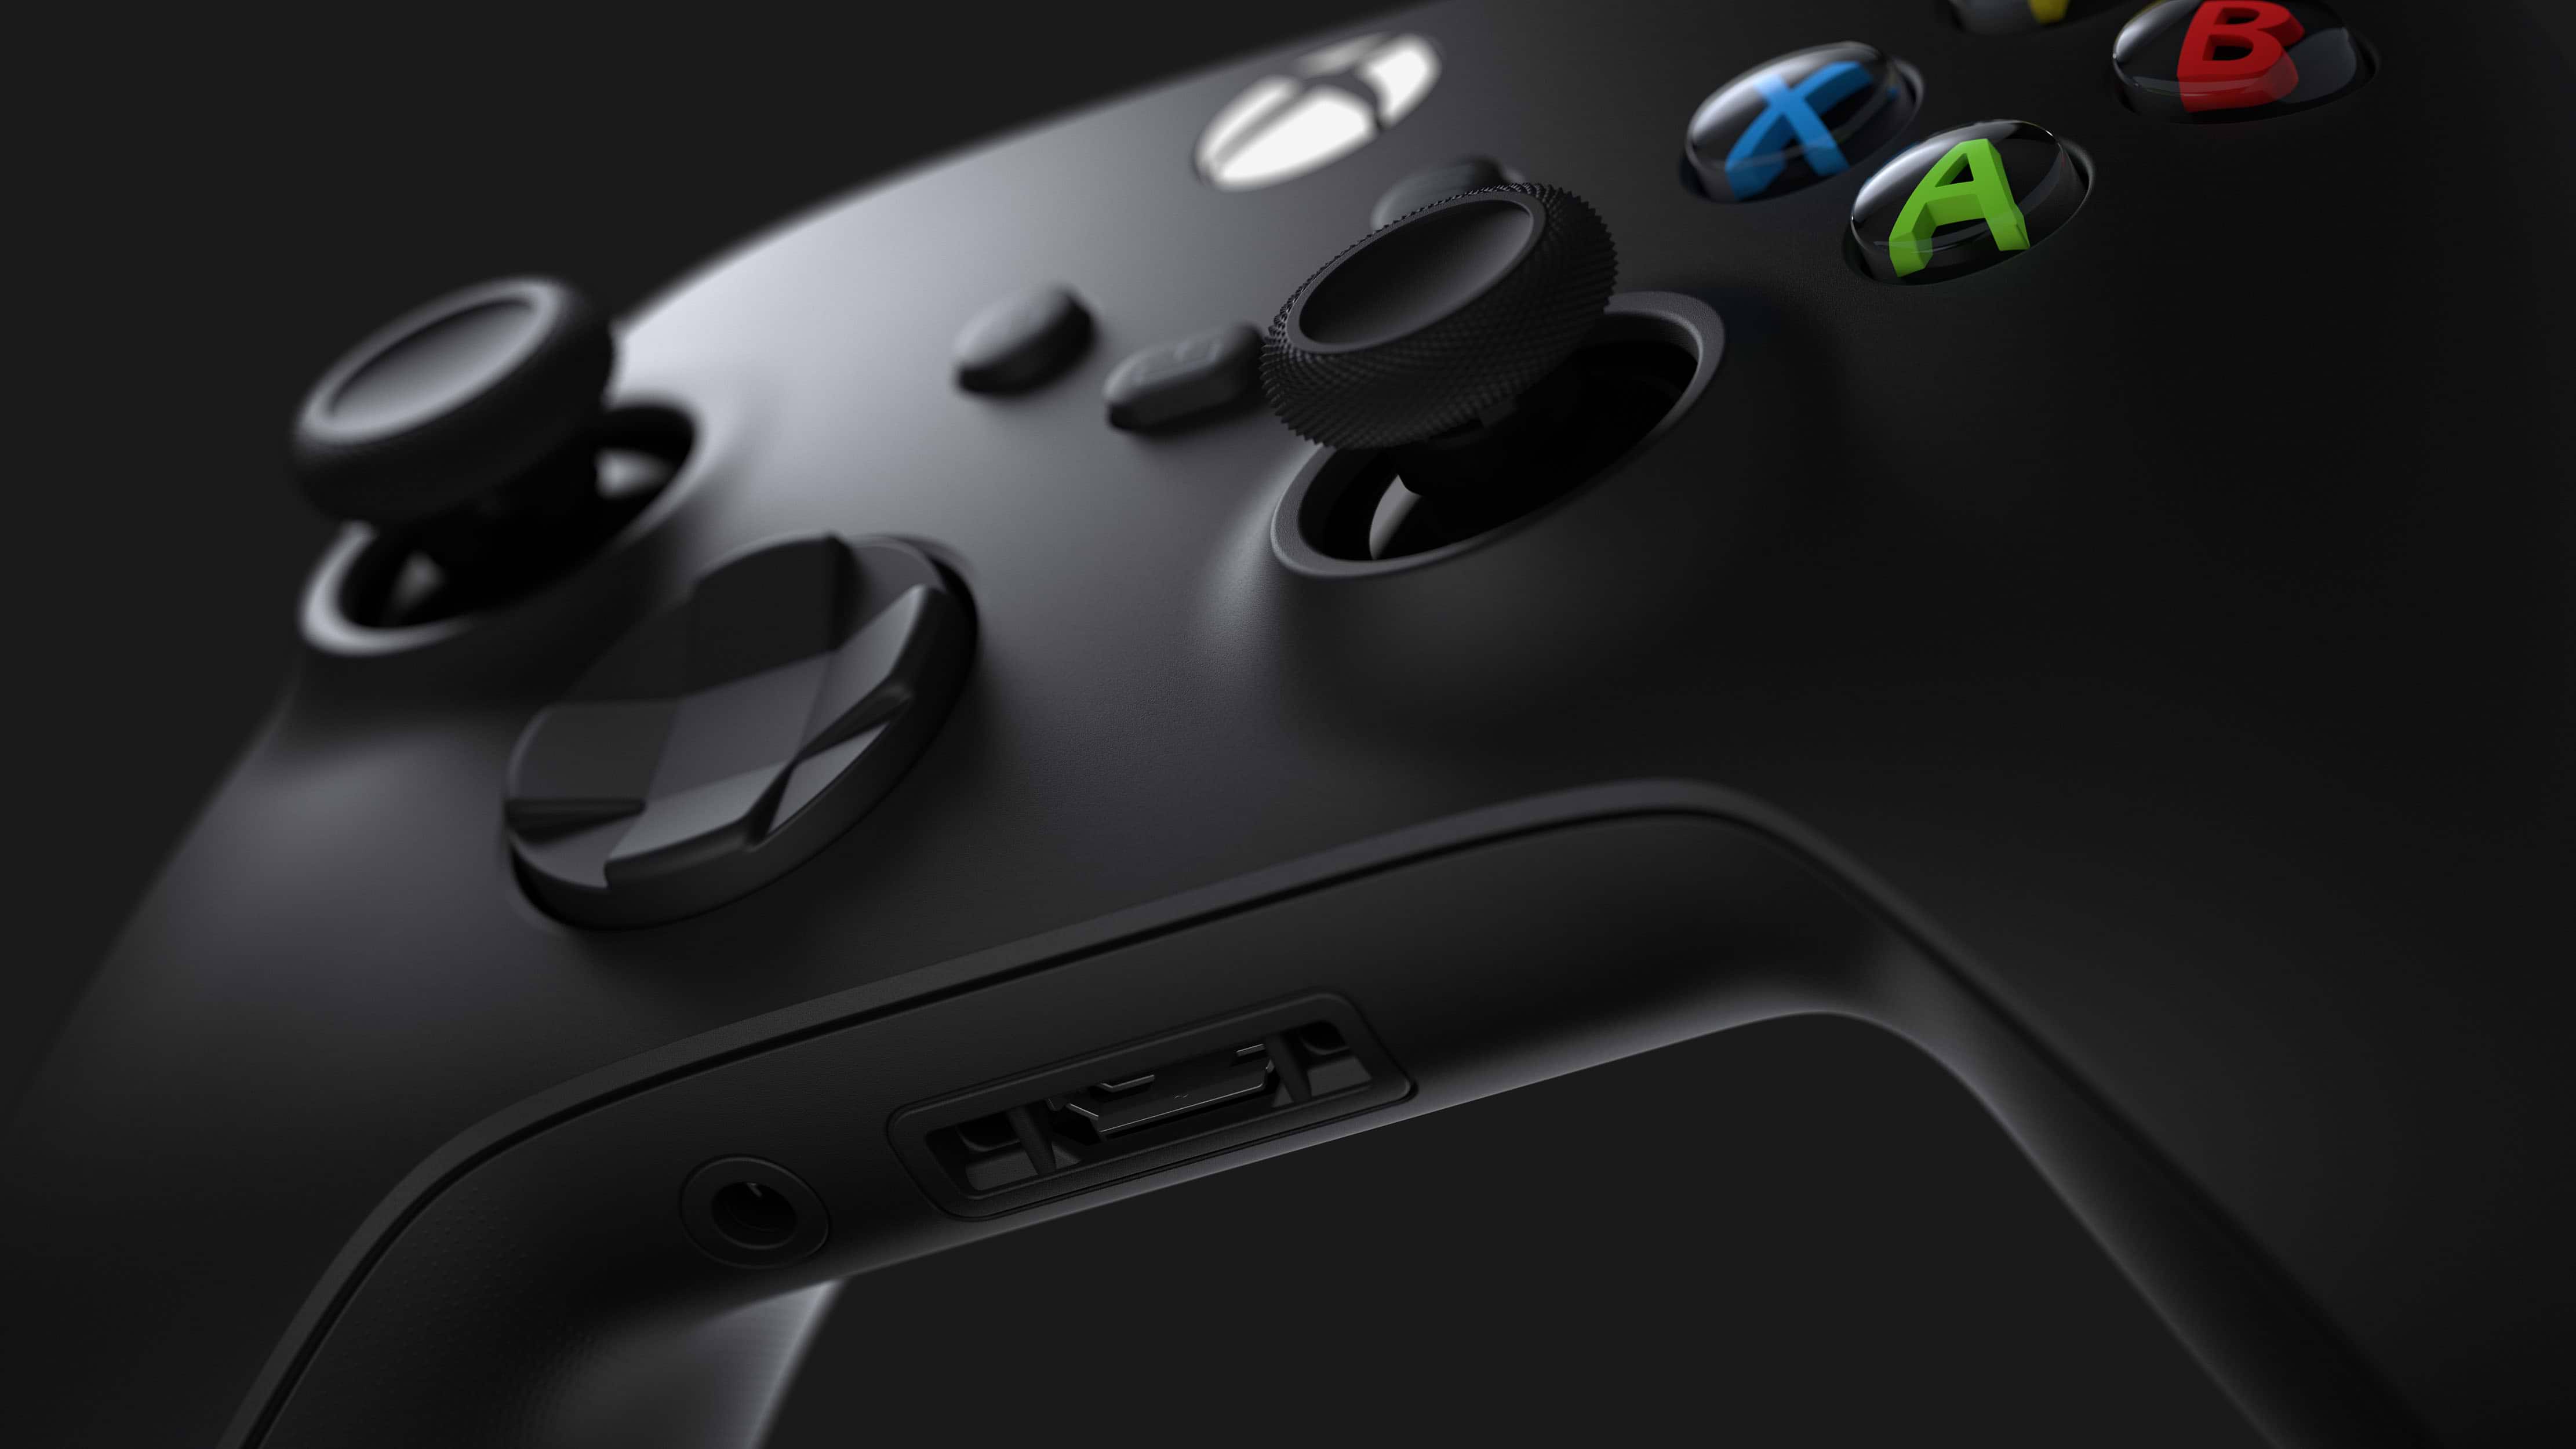 באנדל קונסולה Microsoft Xbox Series X 1TB כולל משחק Diablo IV - צבע שחור שנתיים אחריות ע"י היבואן הרשמי